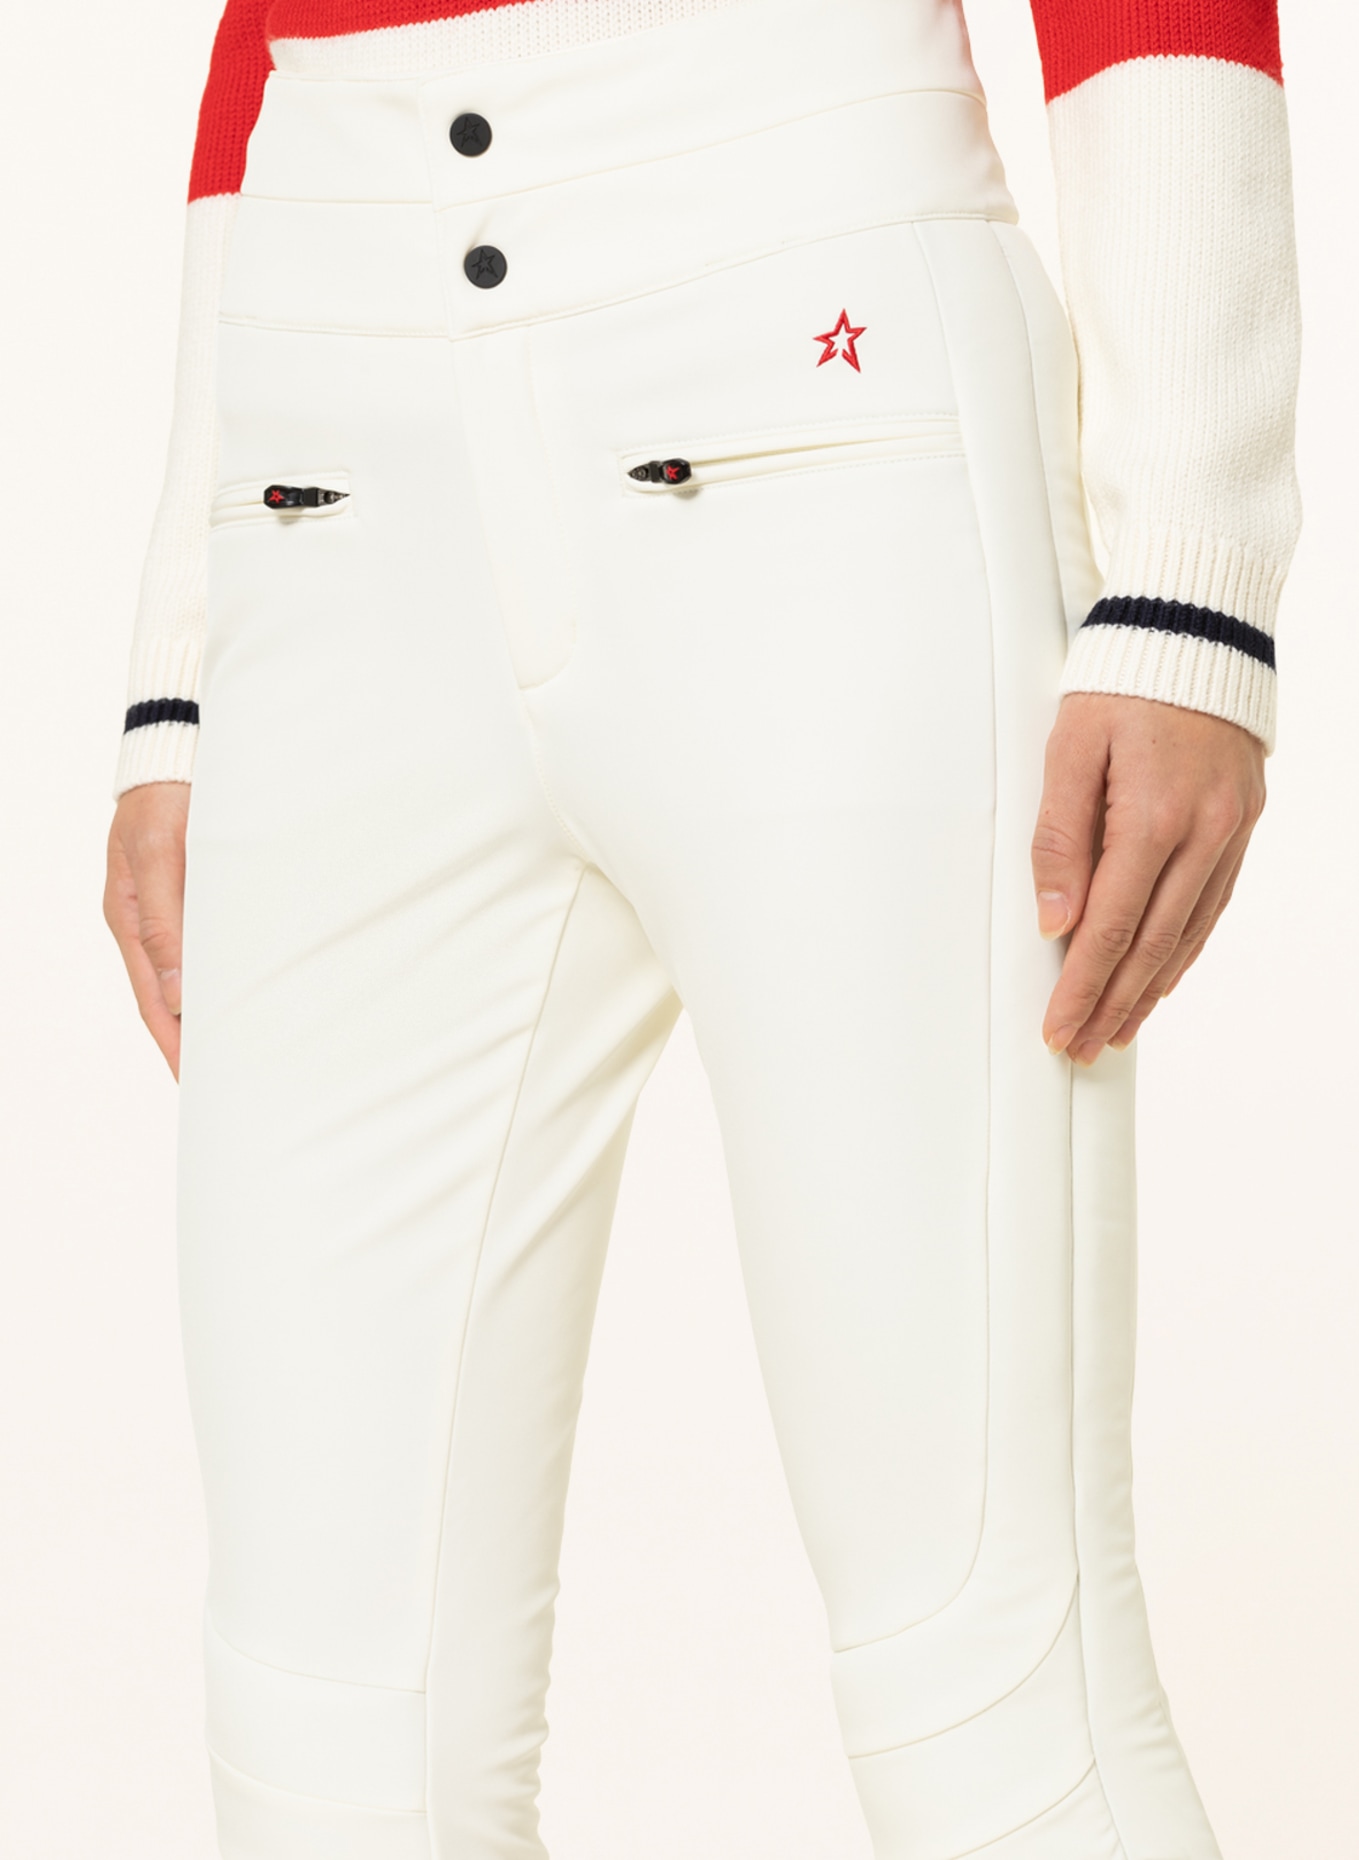 PERFECT MOMENT Ski pants AURORA in white